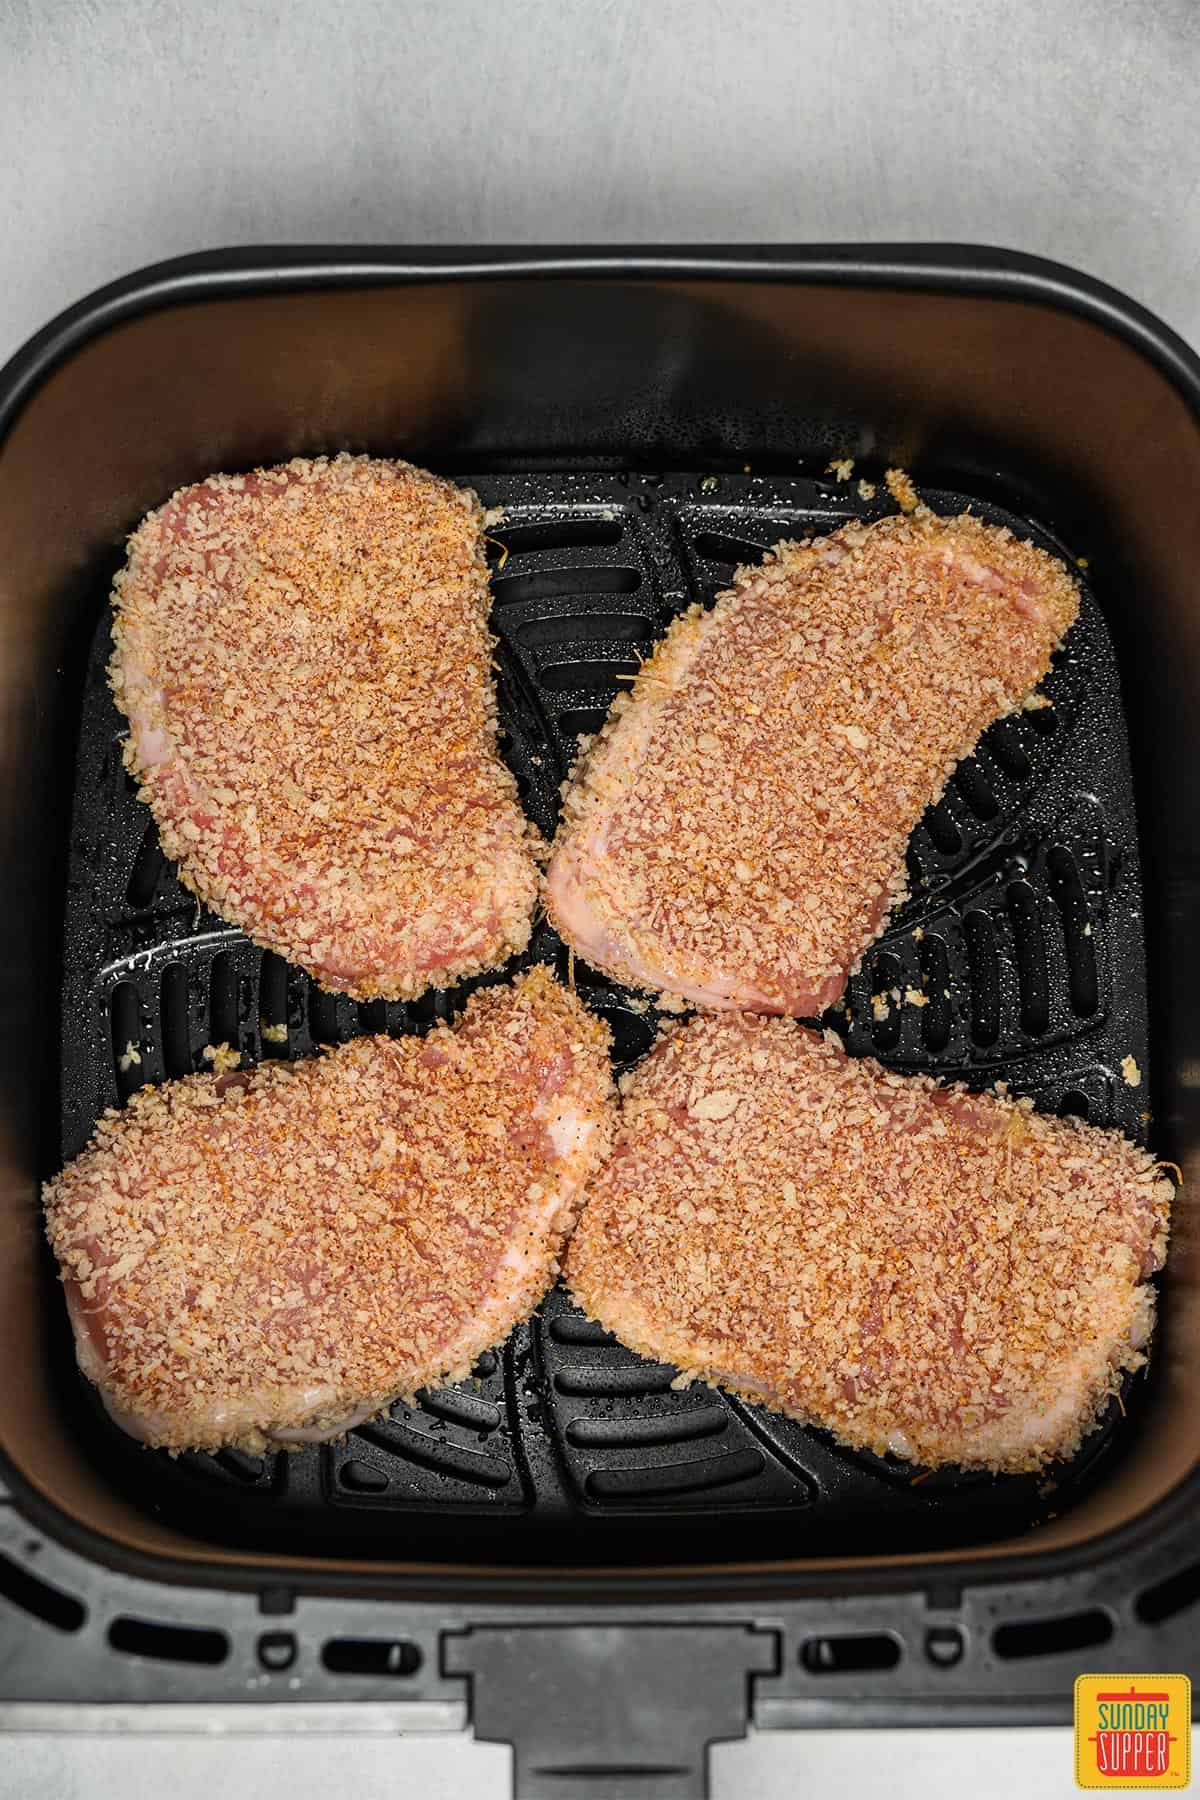 Breaded pork chops in air fryer basket